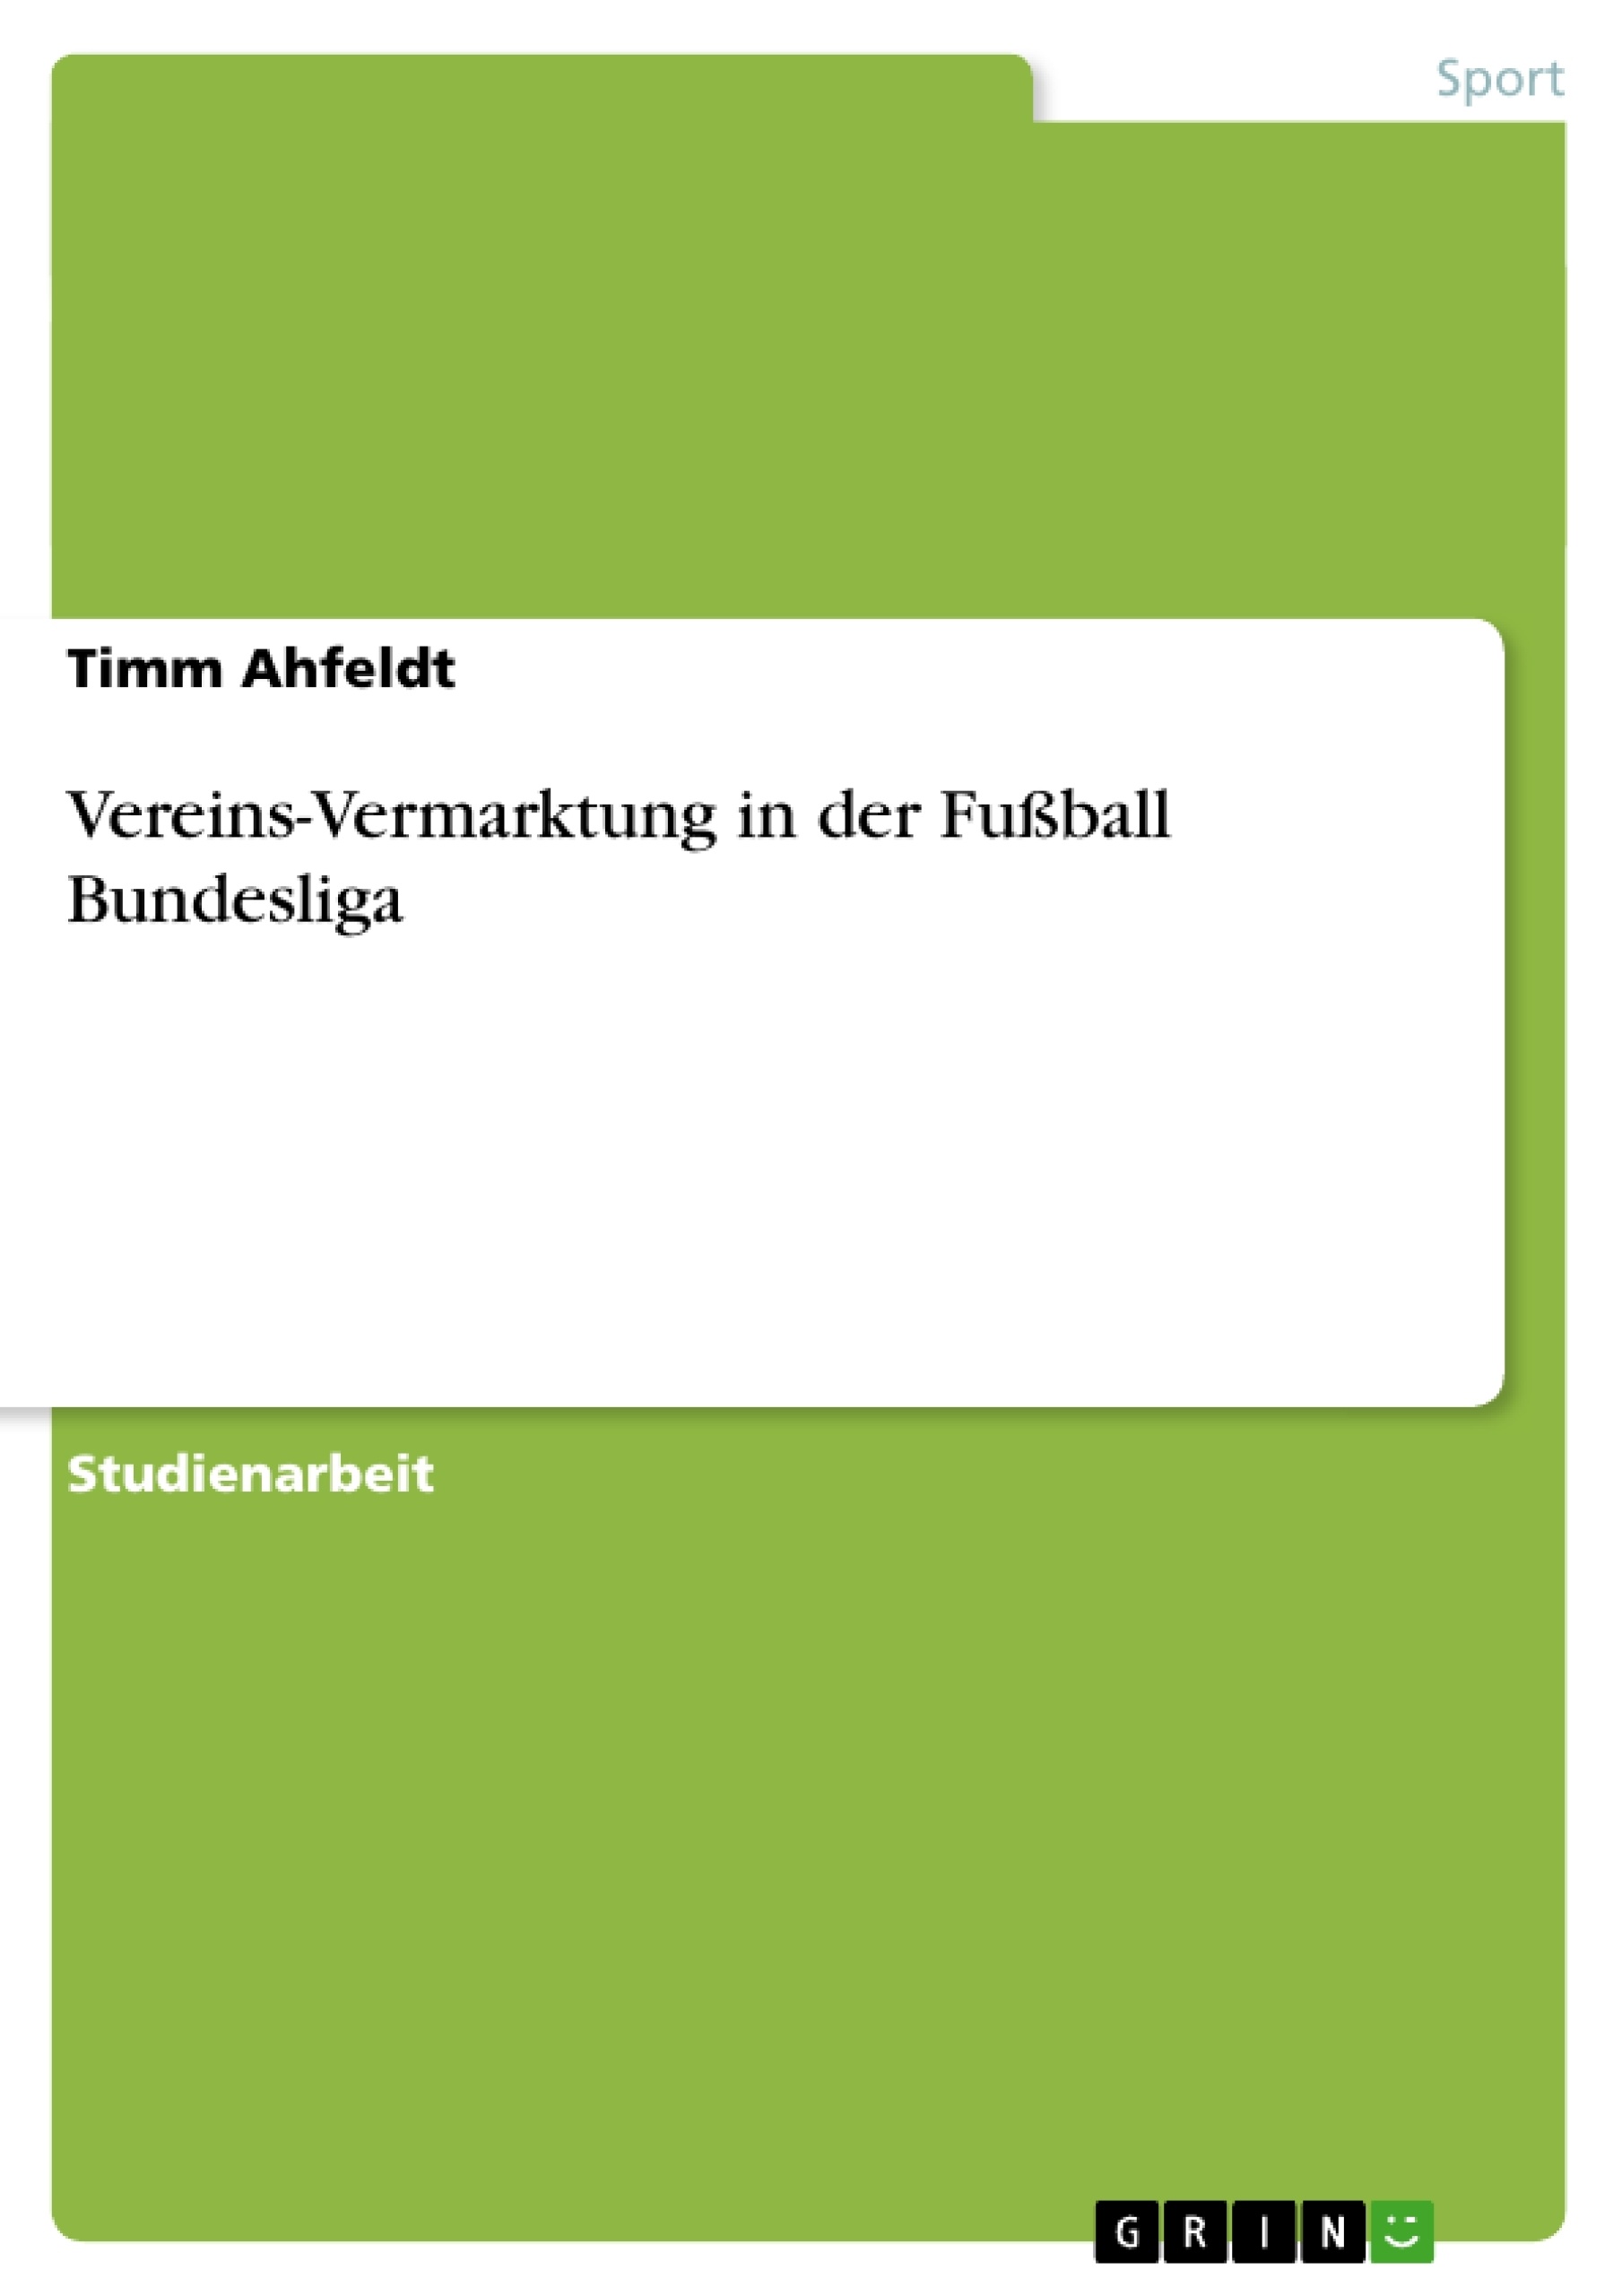 Titel: Vereins-Vermarktung in der Fußball Bundesliga